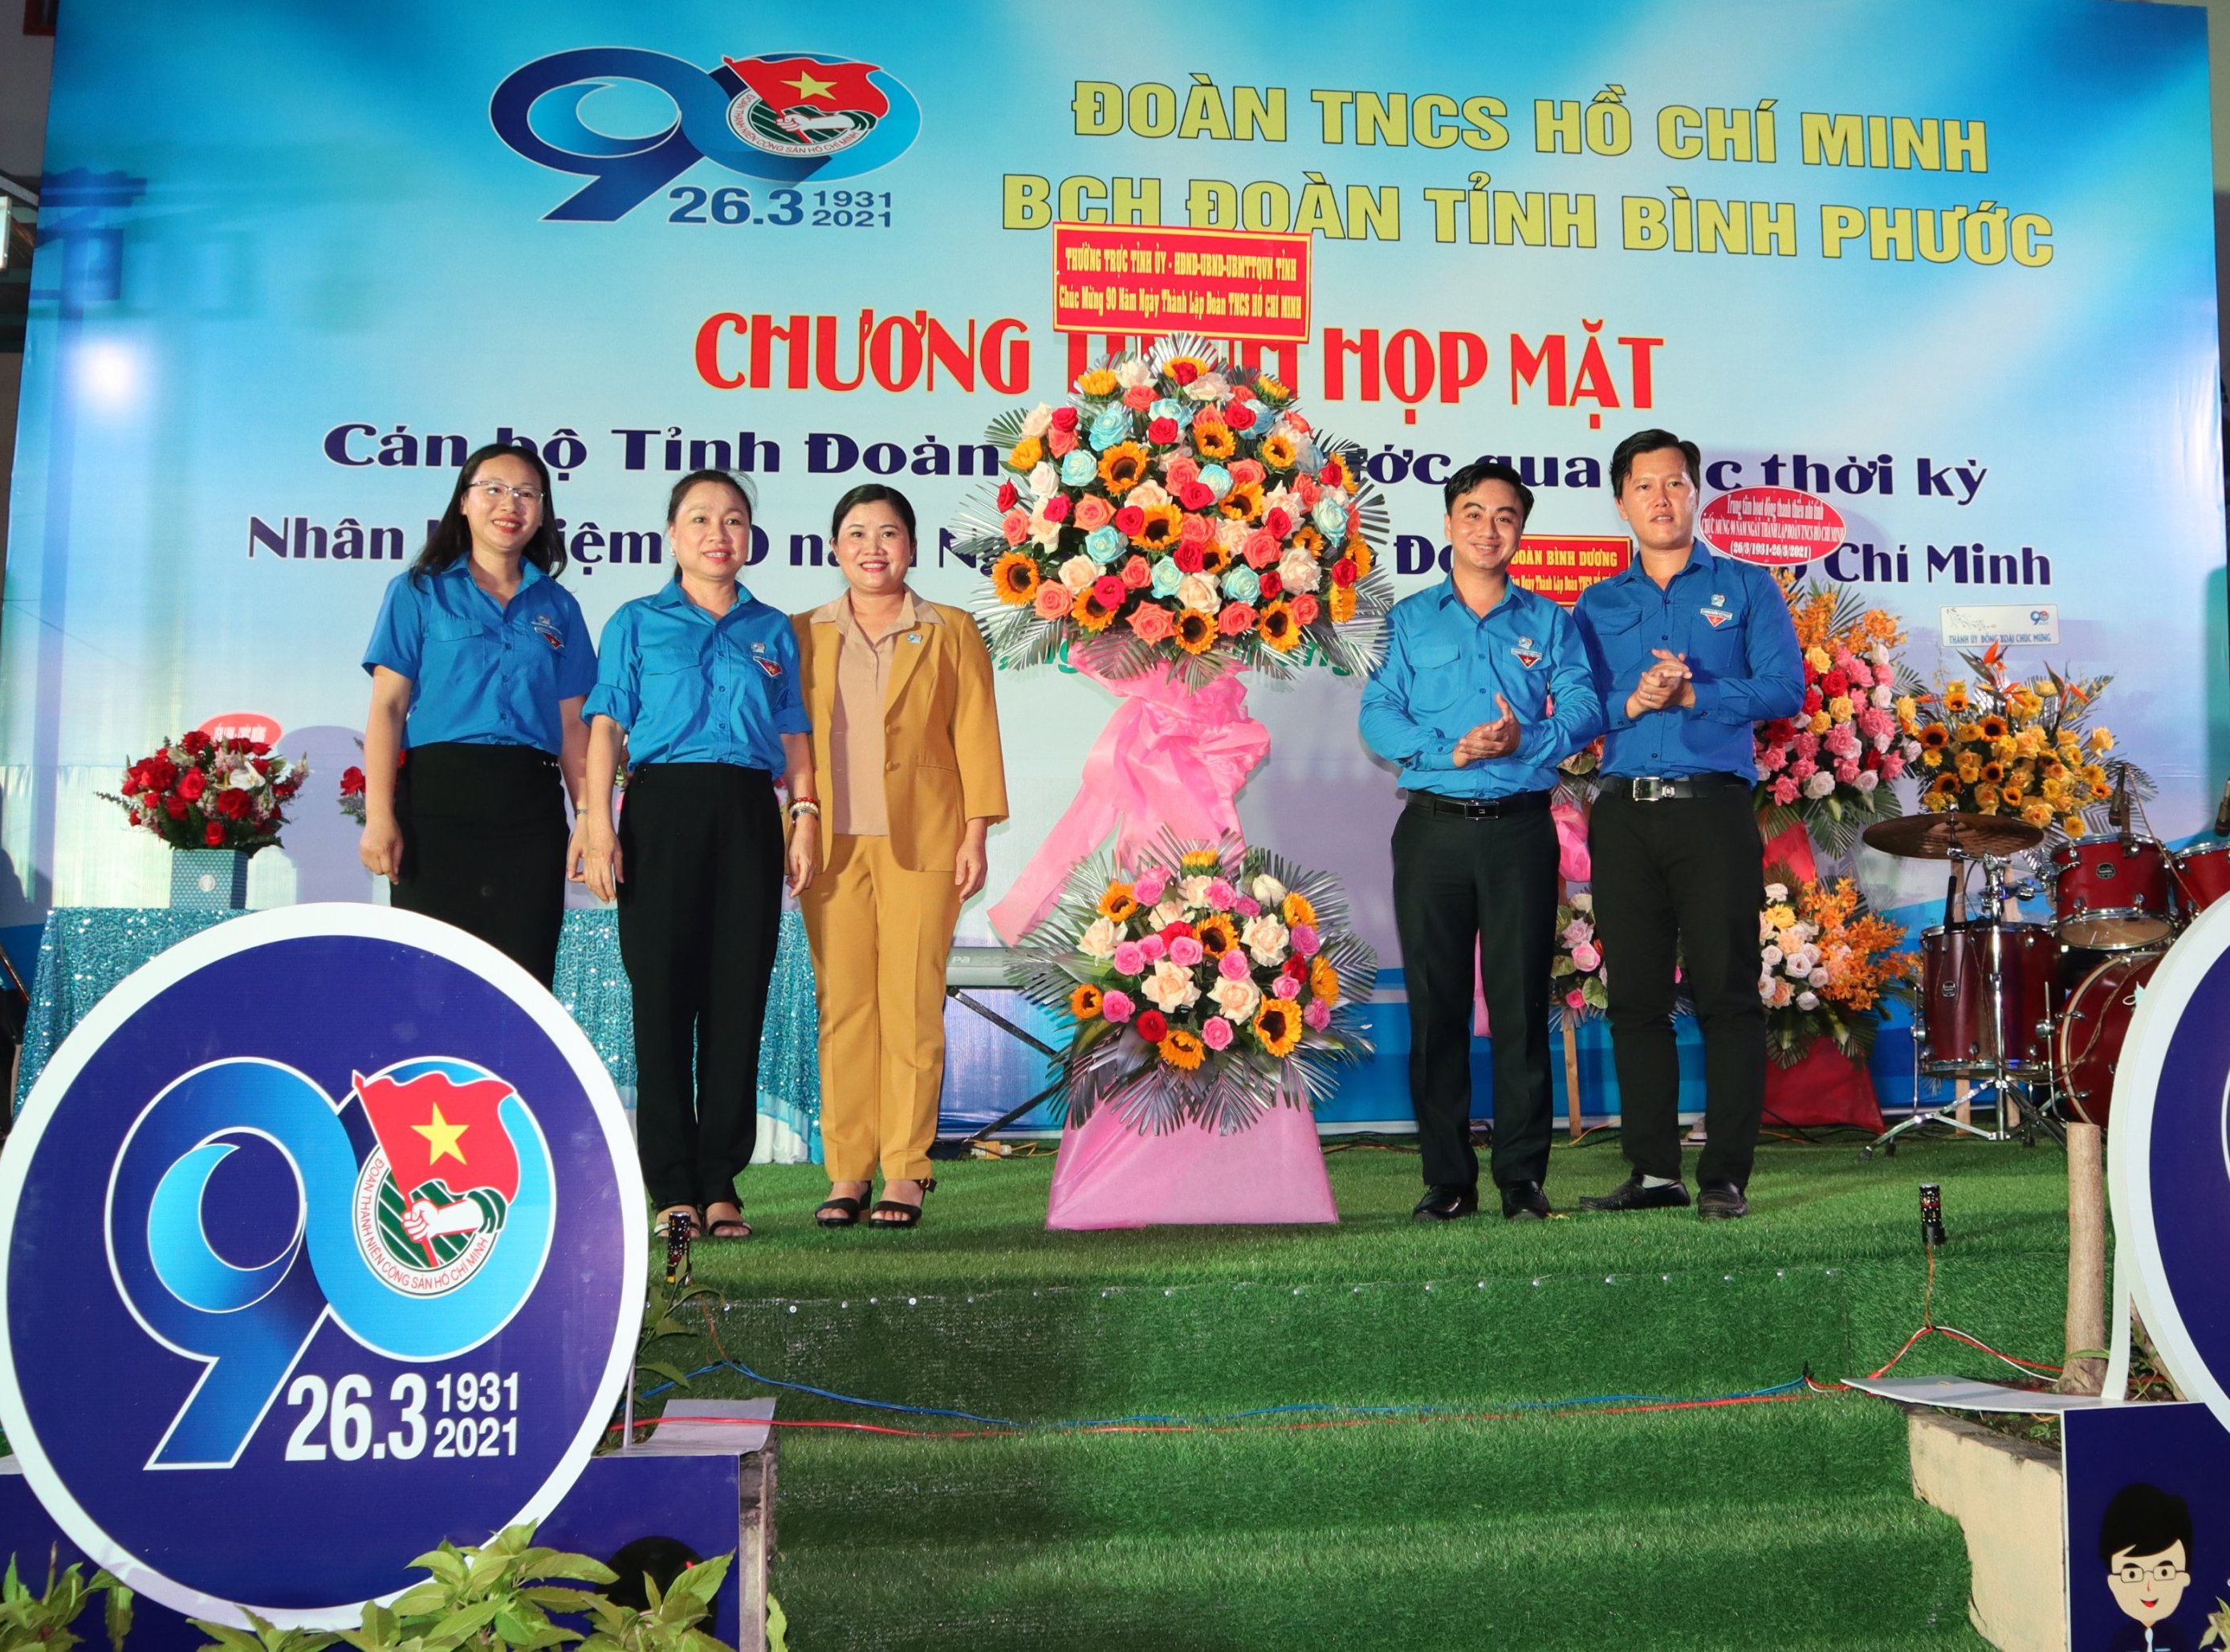  Phó Bí thư Tỉnh ủy, Chủ tịch UBND tỉnh Trần Tuệ Hiền (người thứ ba từ trái qua phải) tặng lẵng hoa chúc mừng sinh nhật Đoàn tròn 90 tuổi